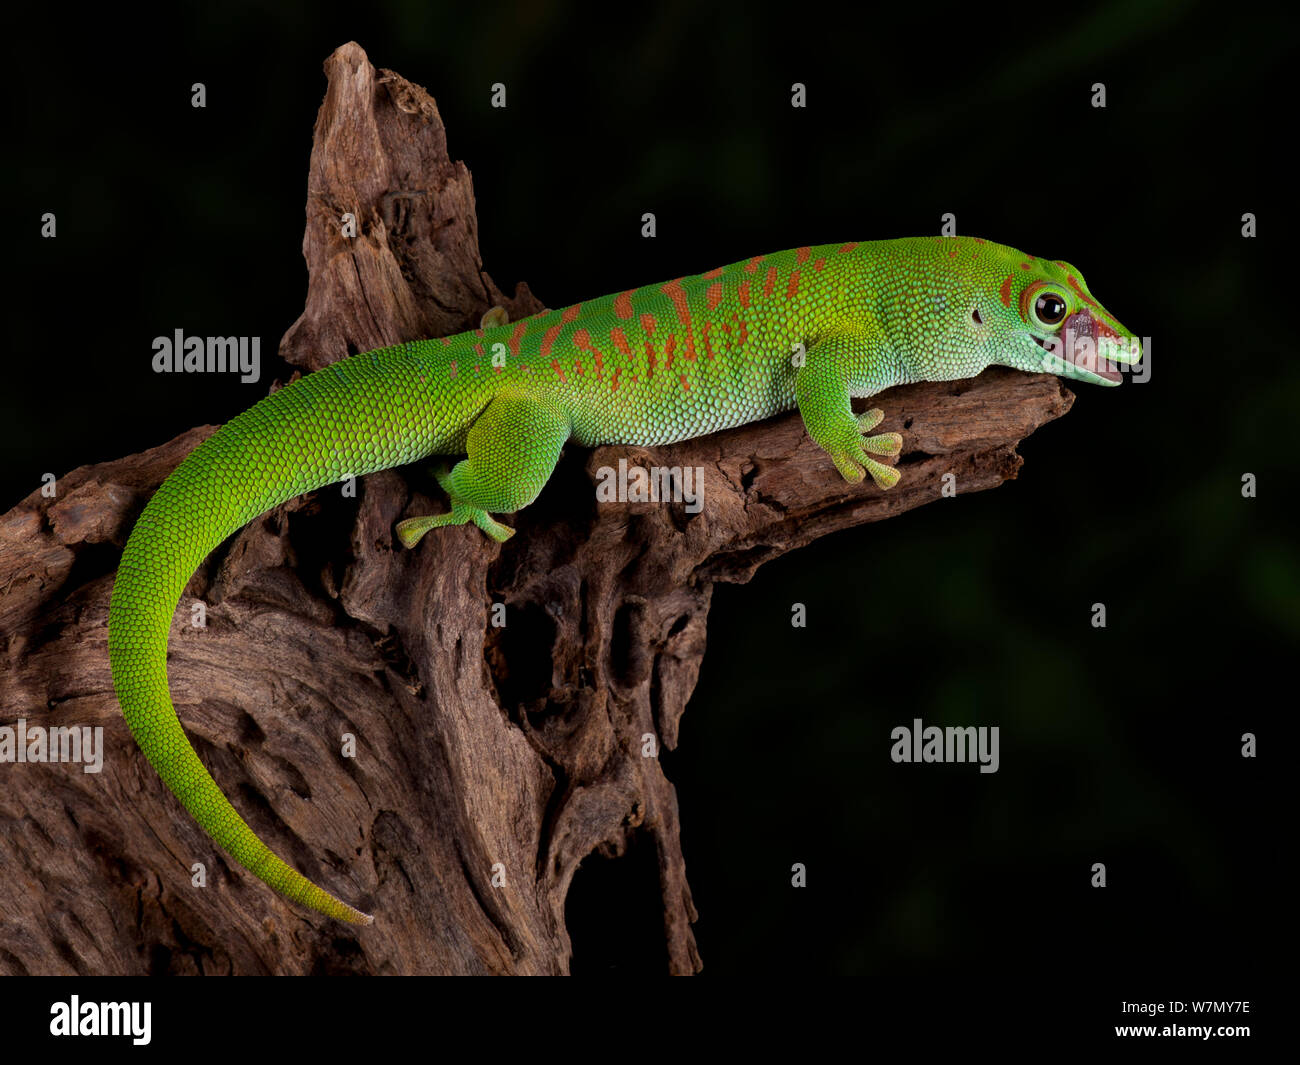 Giant Day Gecko, (Phelsuma madagascariensis grandis) de Madagascar cautivo Foto de stock